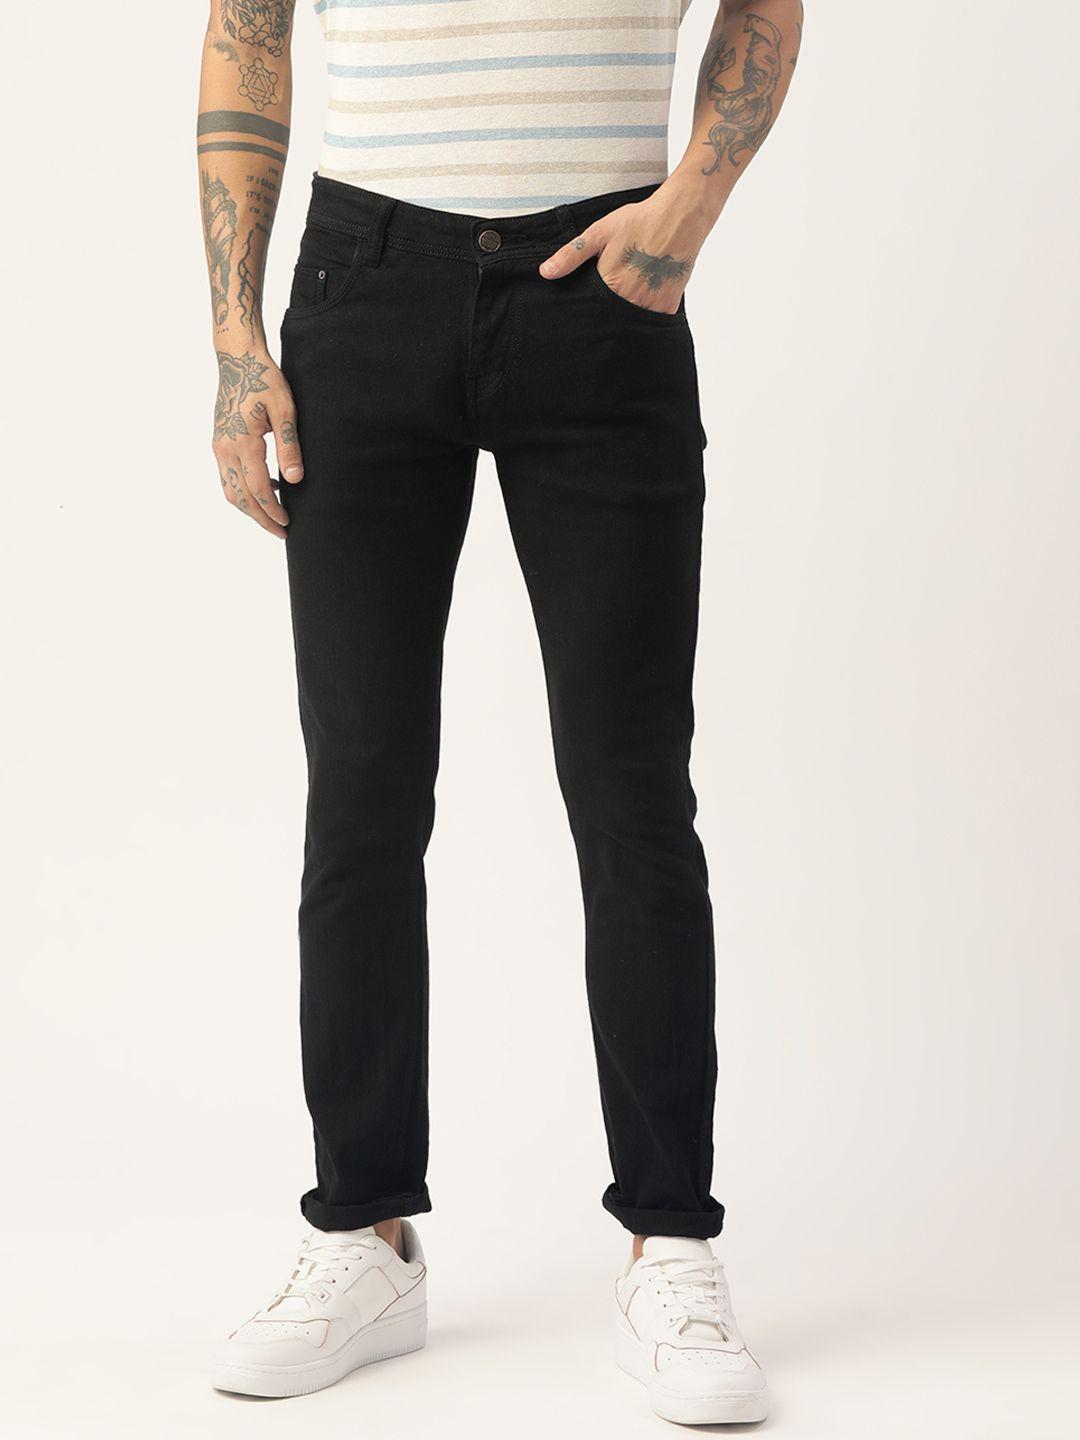 paris hamilton men black solid slim fit stretchable jeans